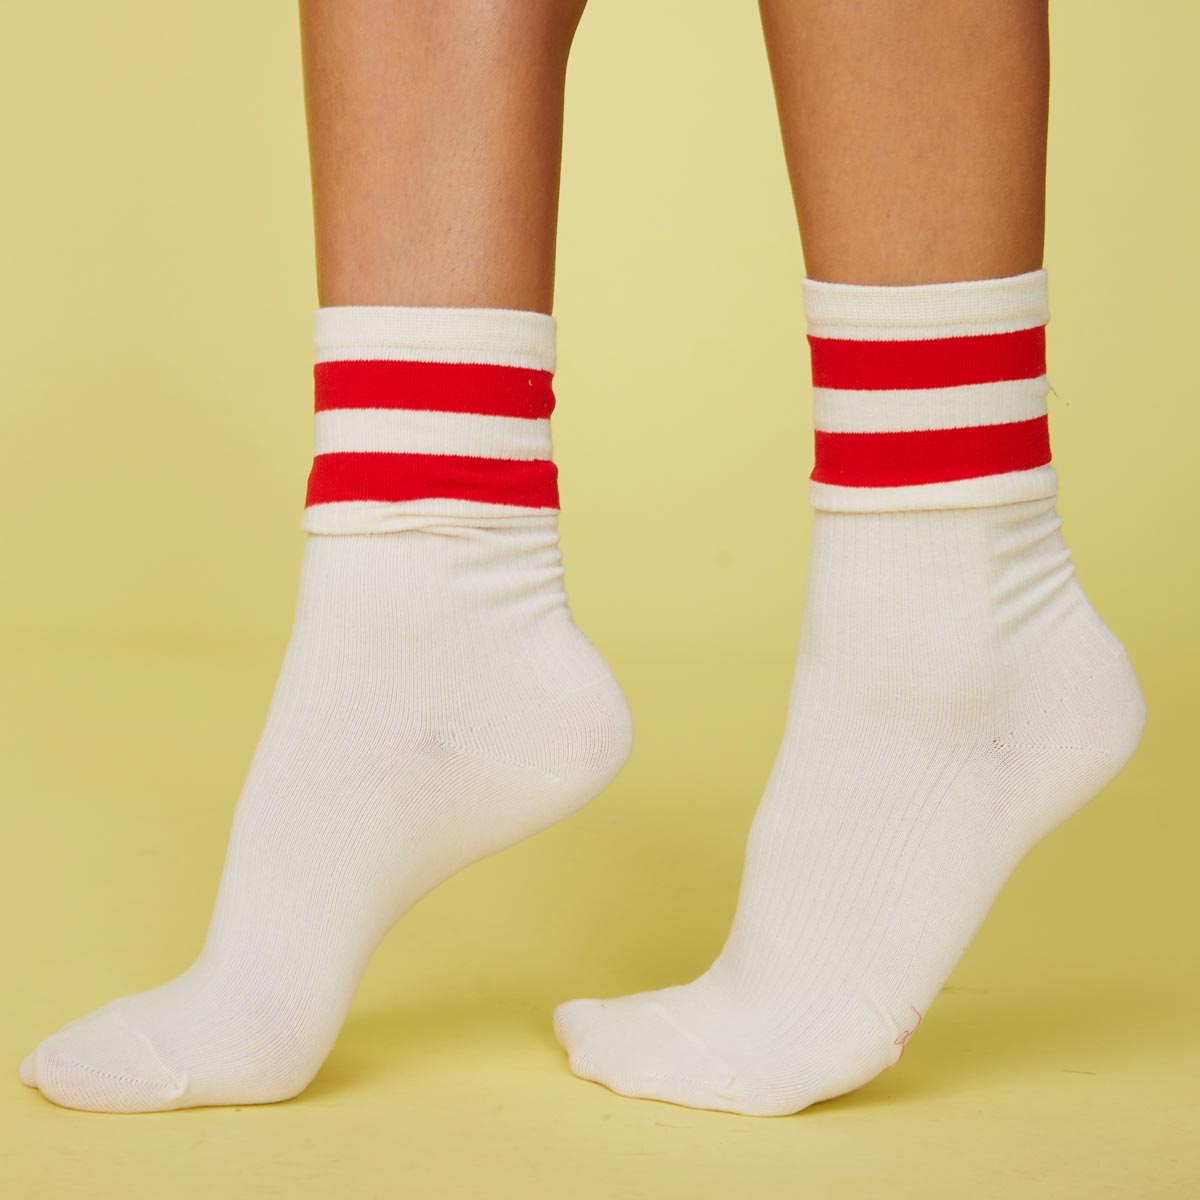 Side view of models feet wearing the stripe socks in blood red.